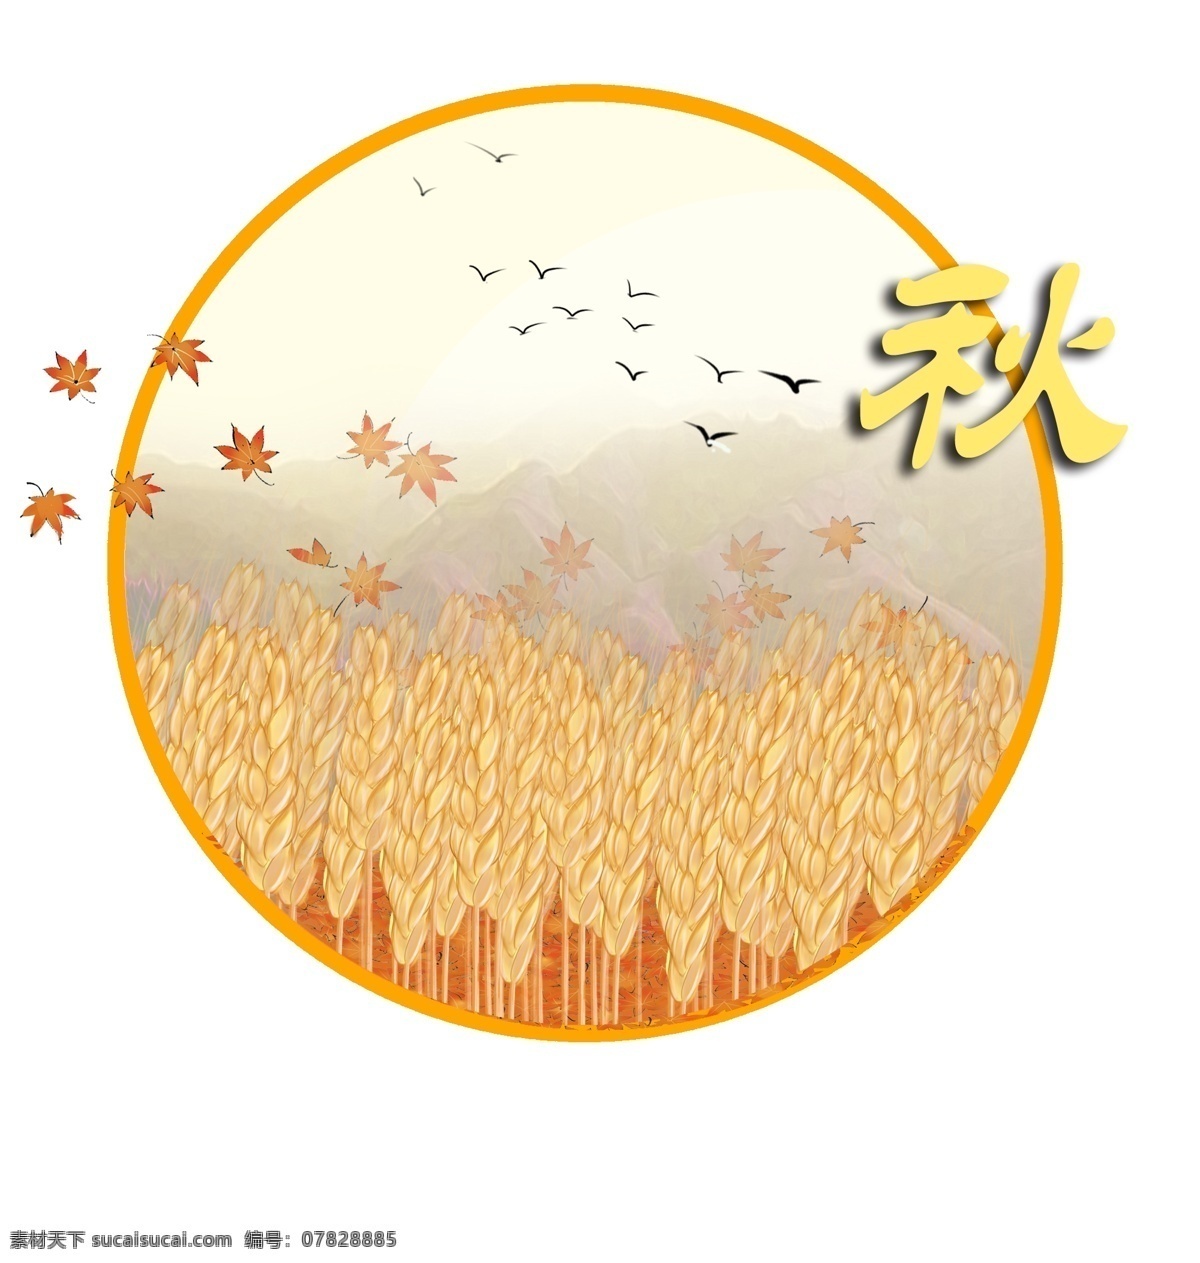 四季 手绘 背景 秋天 元素 枫叶 麦穗 大雁 黄色 枫树 山 秋天风景